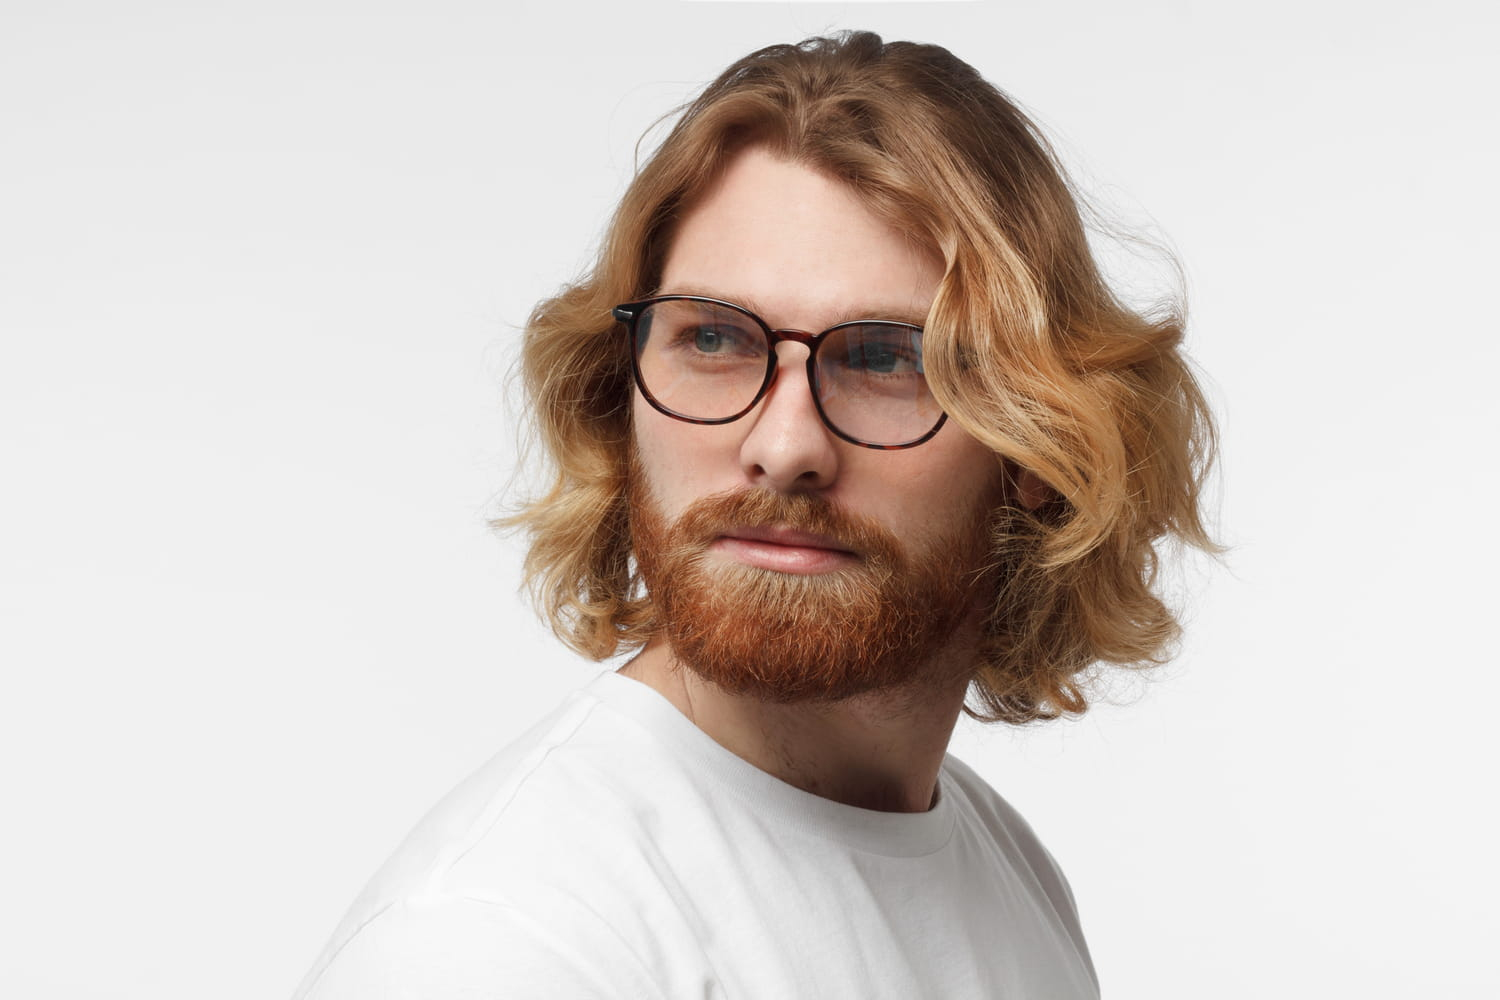 Cheveux Mi-Longs Homme : Coiffures Et Conseils Pour Les Entretenir pour Coupe Cheveux Mi Long Homme 